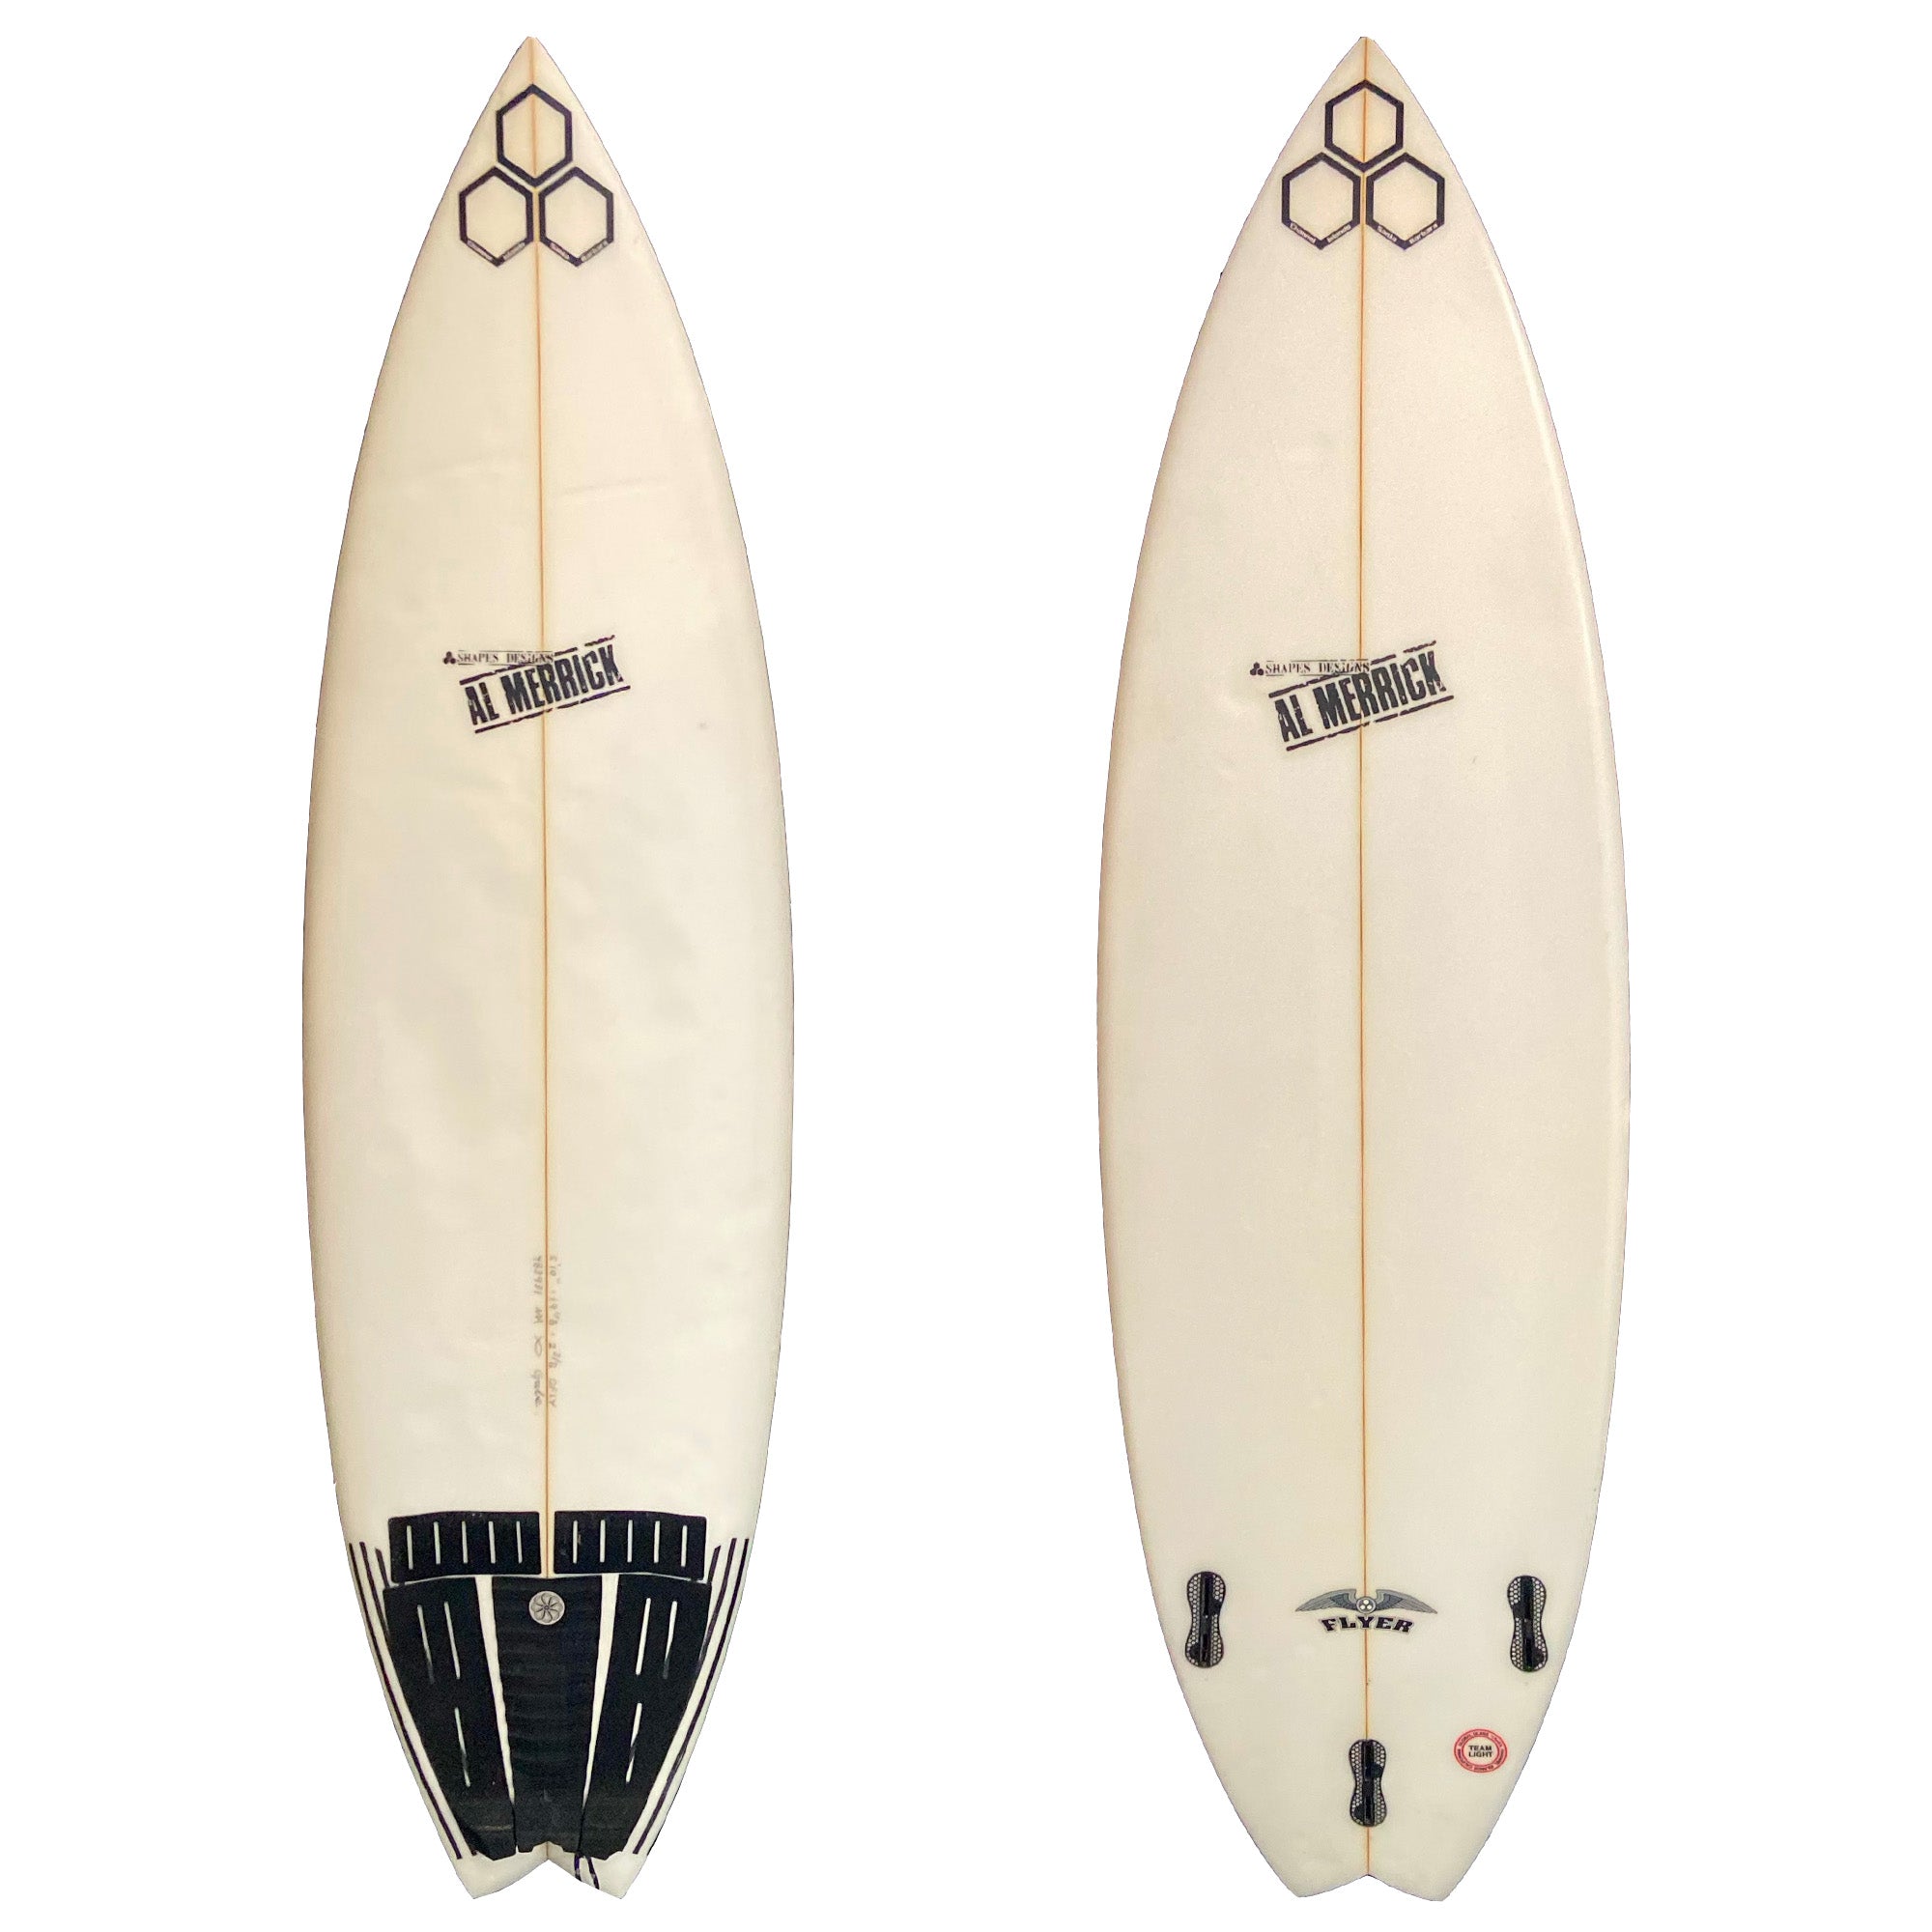 Channel Islands Flyer 5'10 Used Surfboard